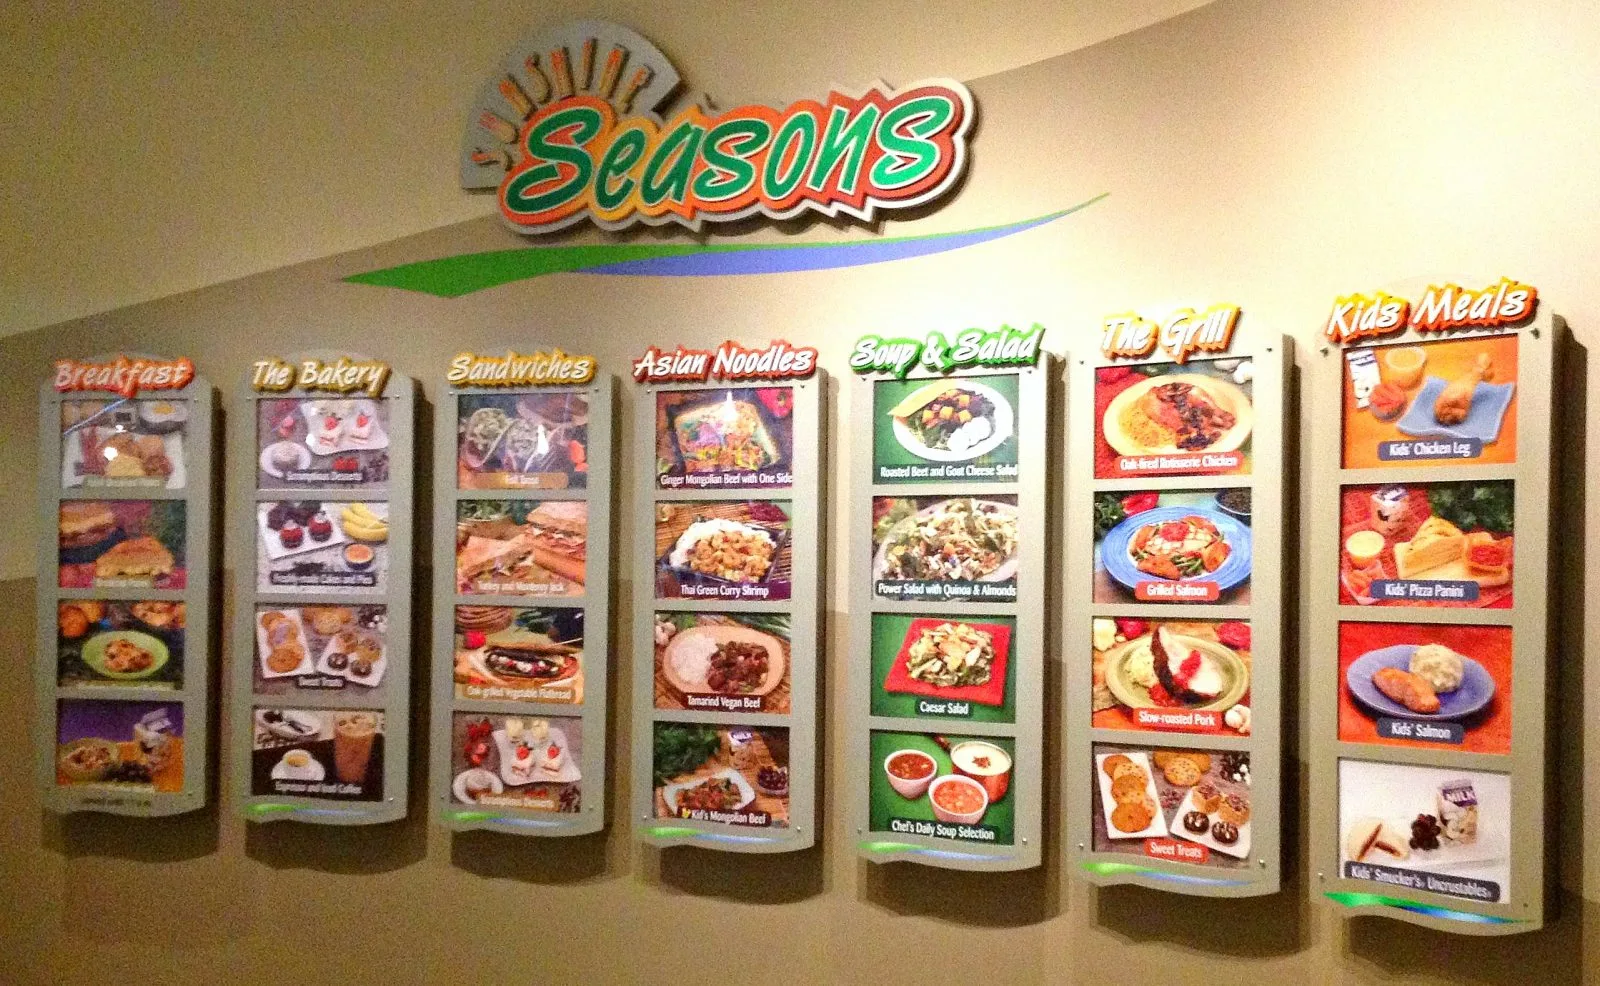 Seasons menu wall